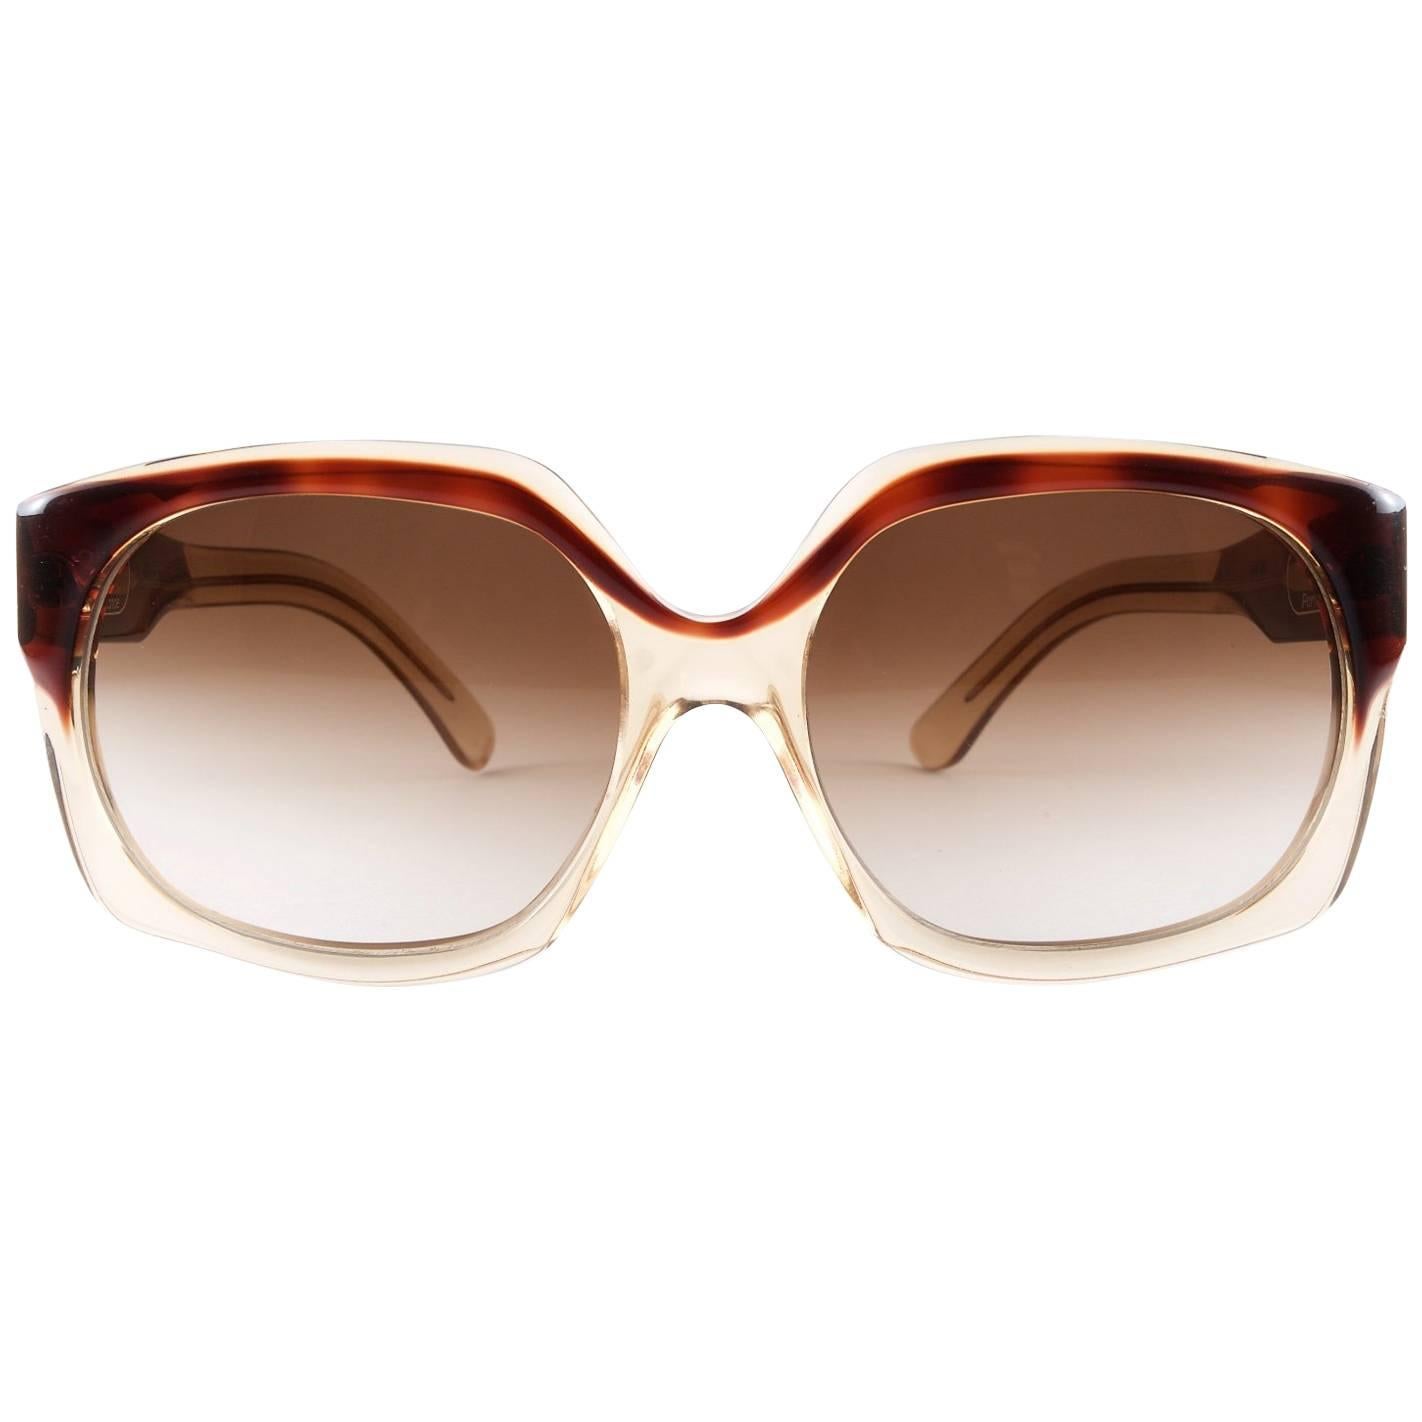 1970s Celine Paris Vintage Sunglasses - Made in France For Sale